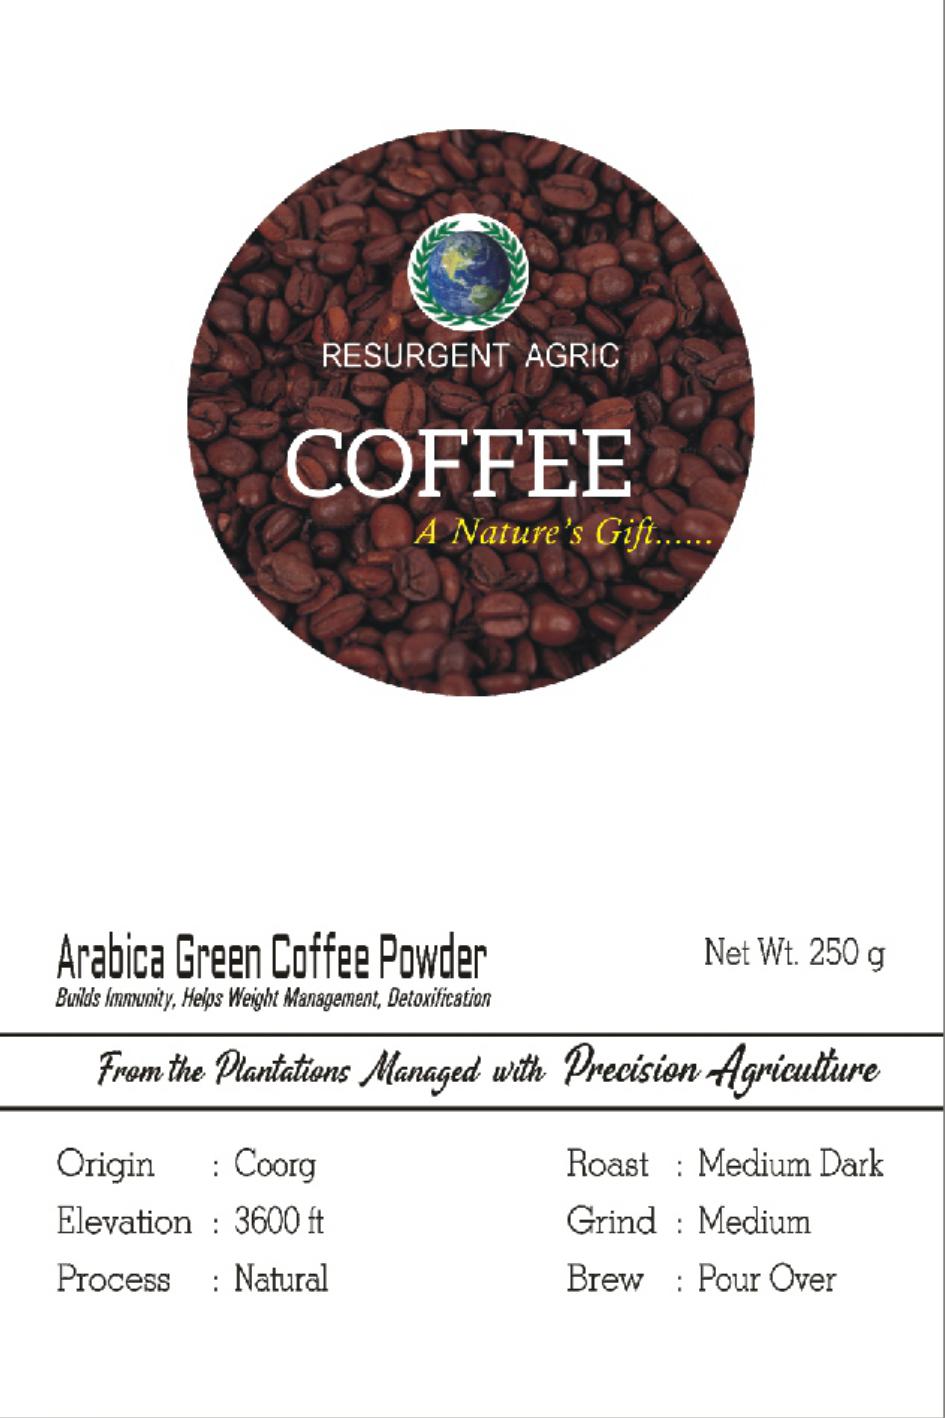 Arabica Green Coffee Powder (Medium Dark - Medium)